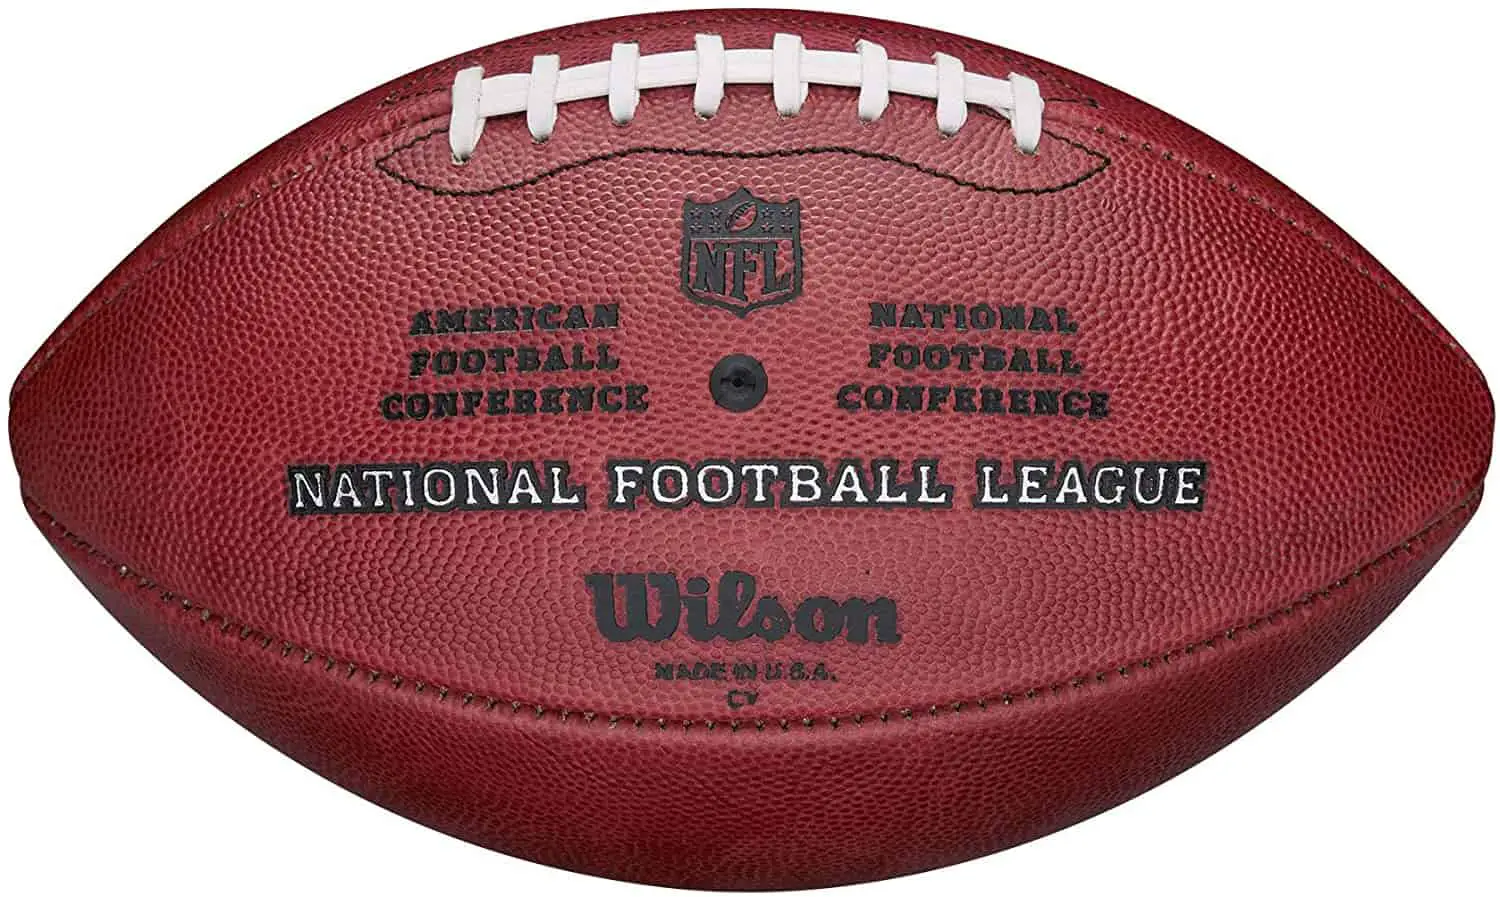 อเมริกันฟุตบอลที่ดีที่สุด "หนังหมู" บอล: Wilson "The Duke" Official NFL Football